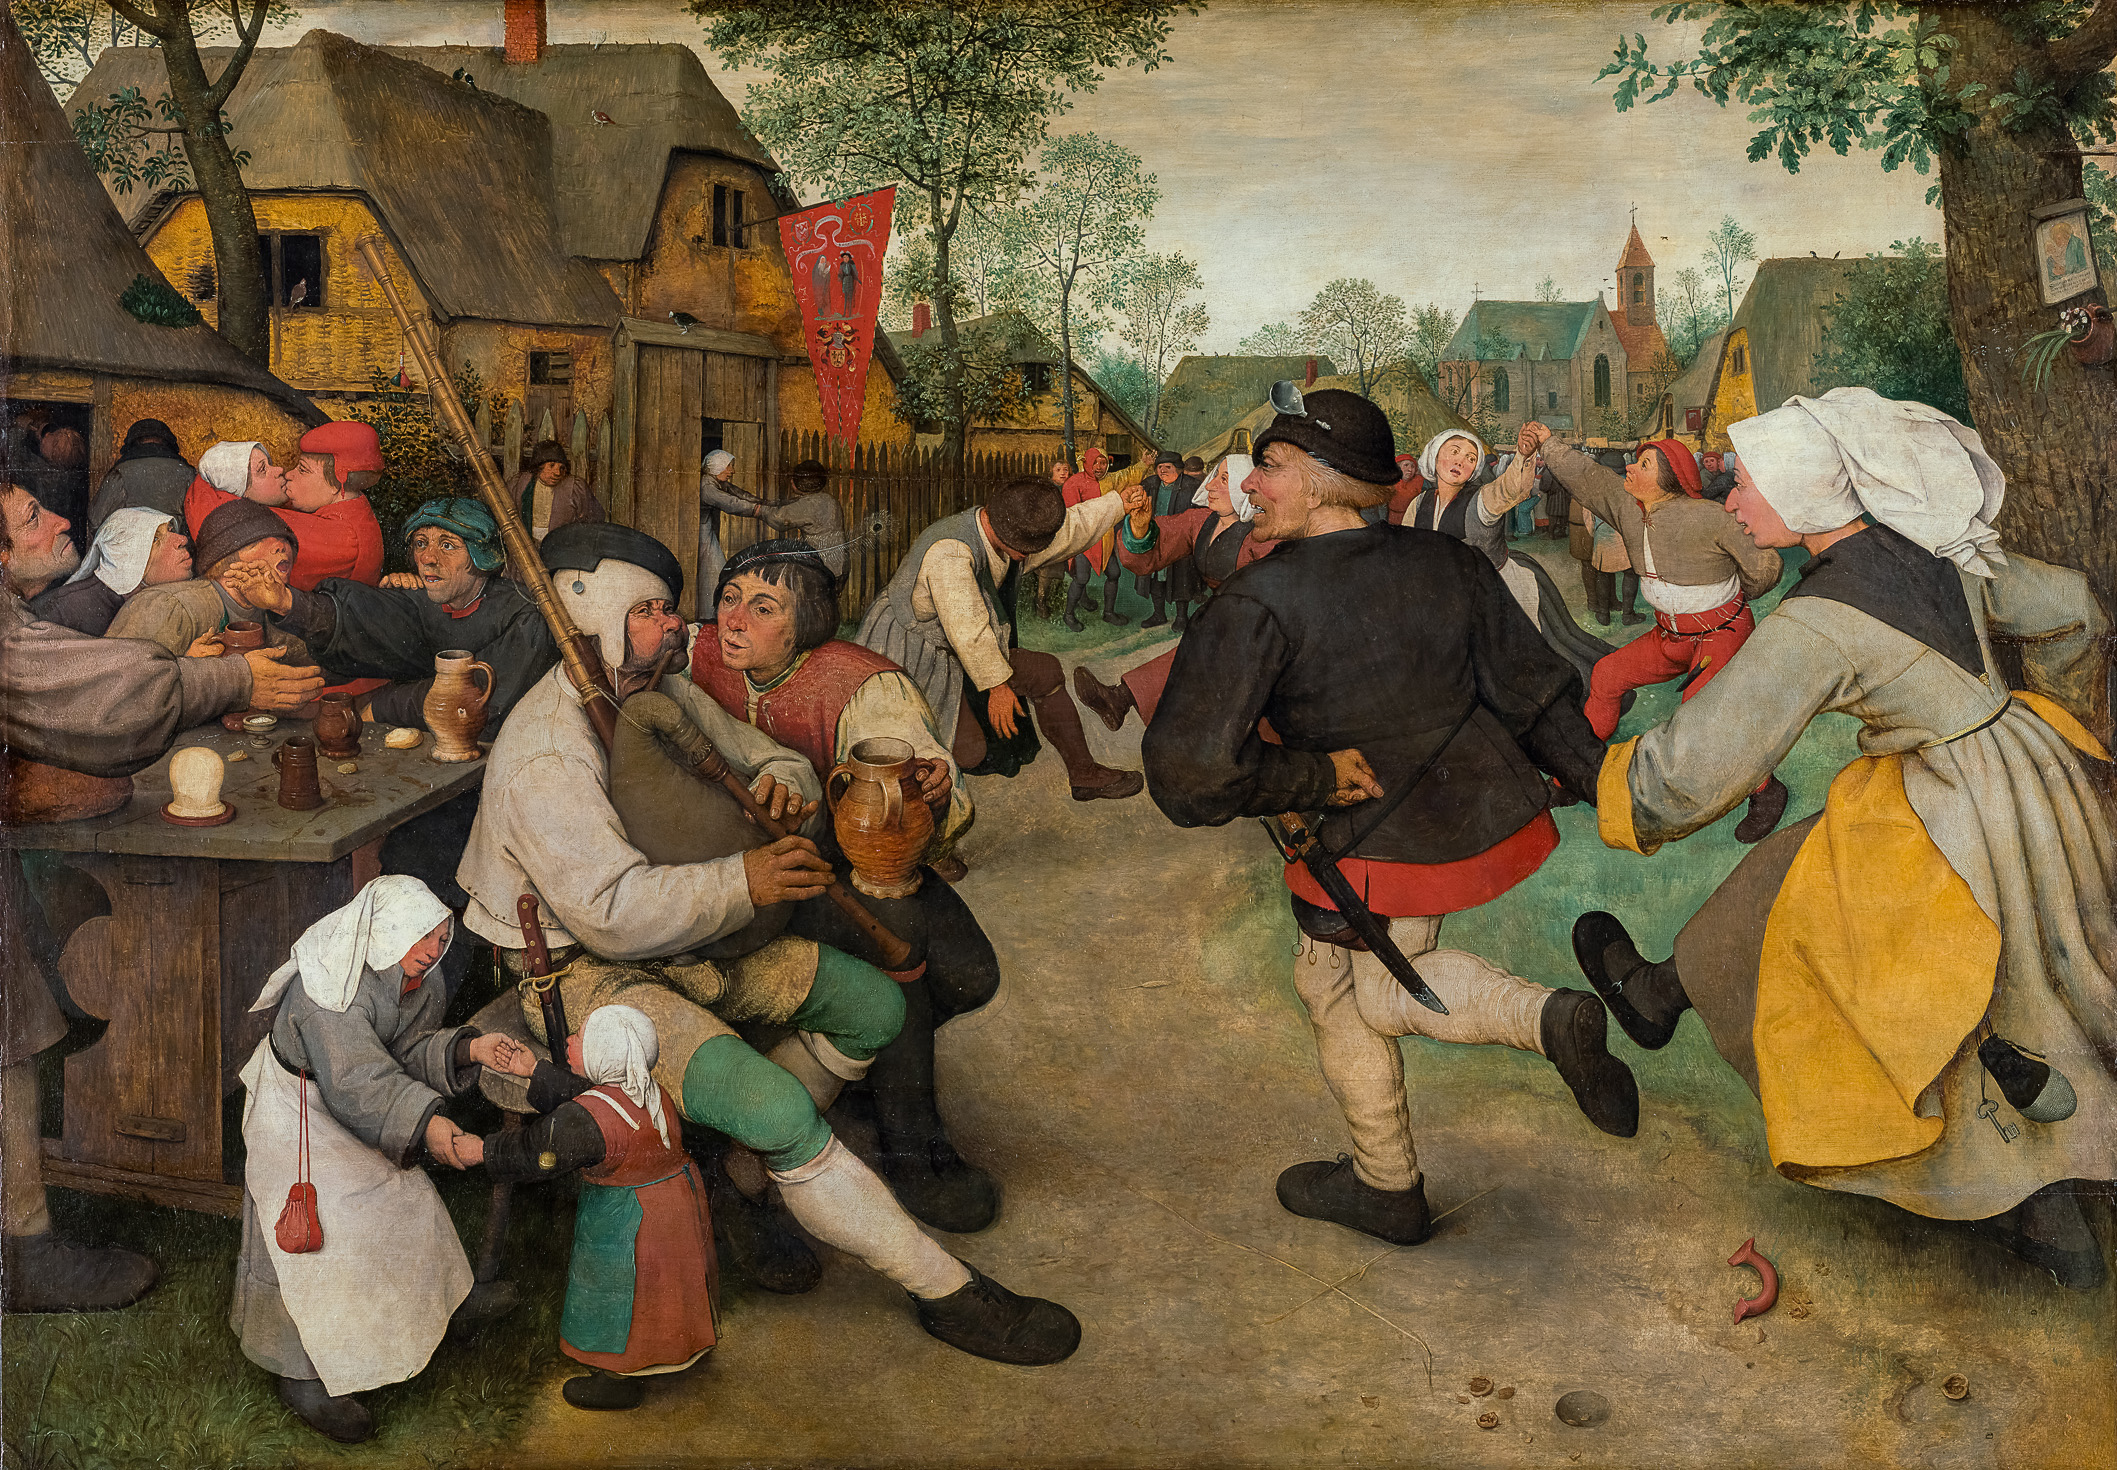 Il ballo del contadino by Pieter Bruegel il Vecchio - c. 1568 - 114 x 164 cm Kunsthistorisches Museum